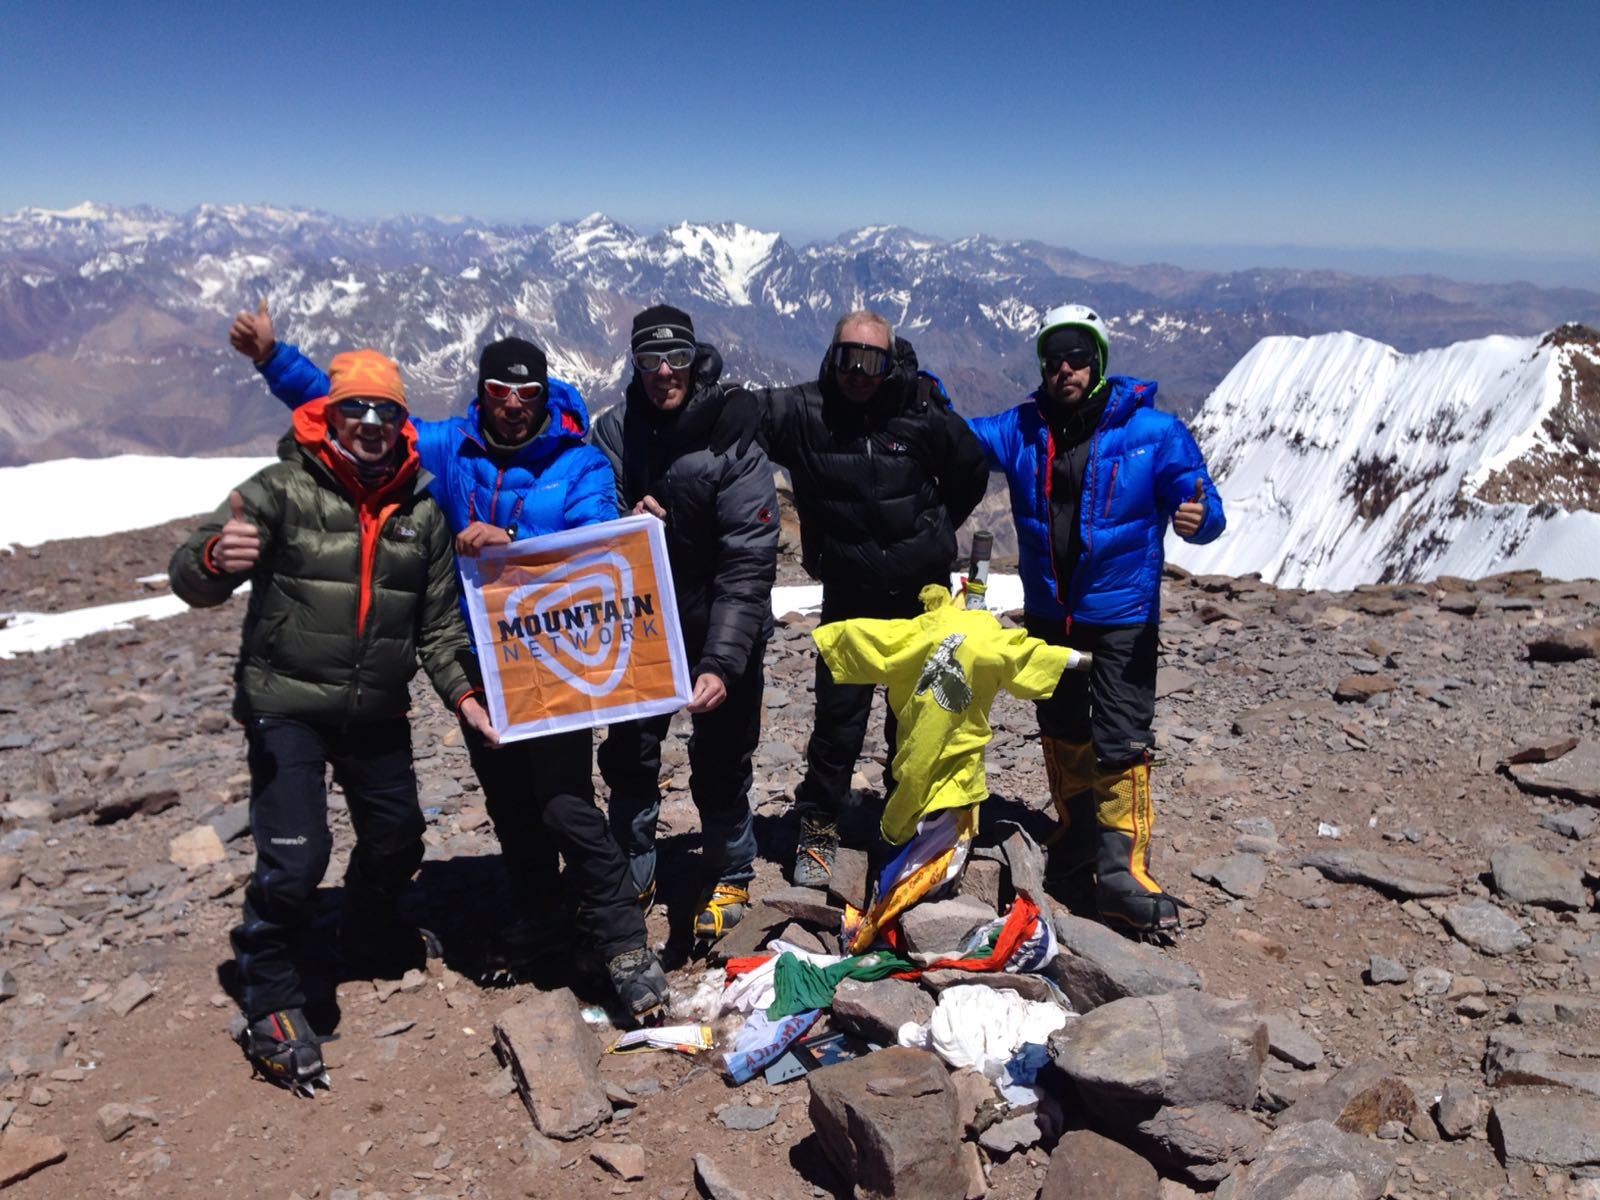 De top van de Aconcagua is bereikt! 1